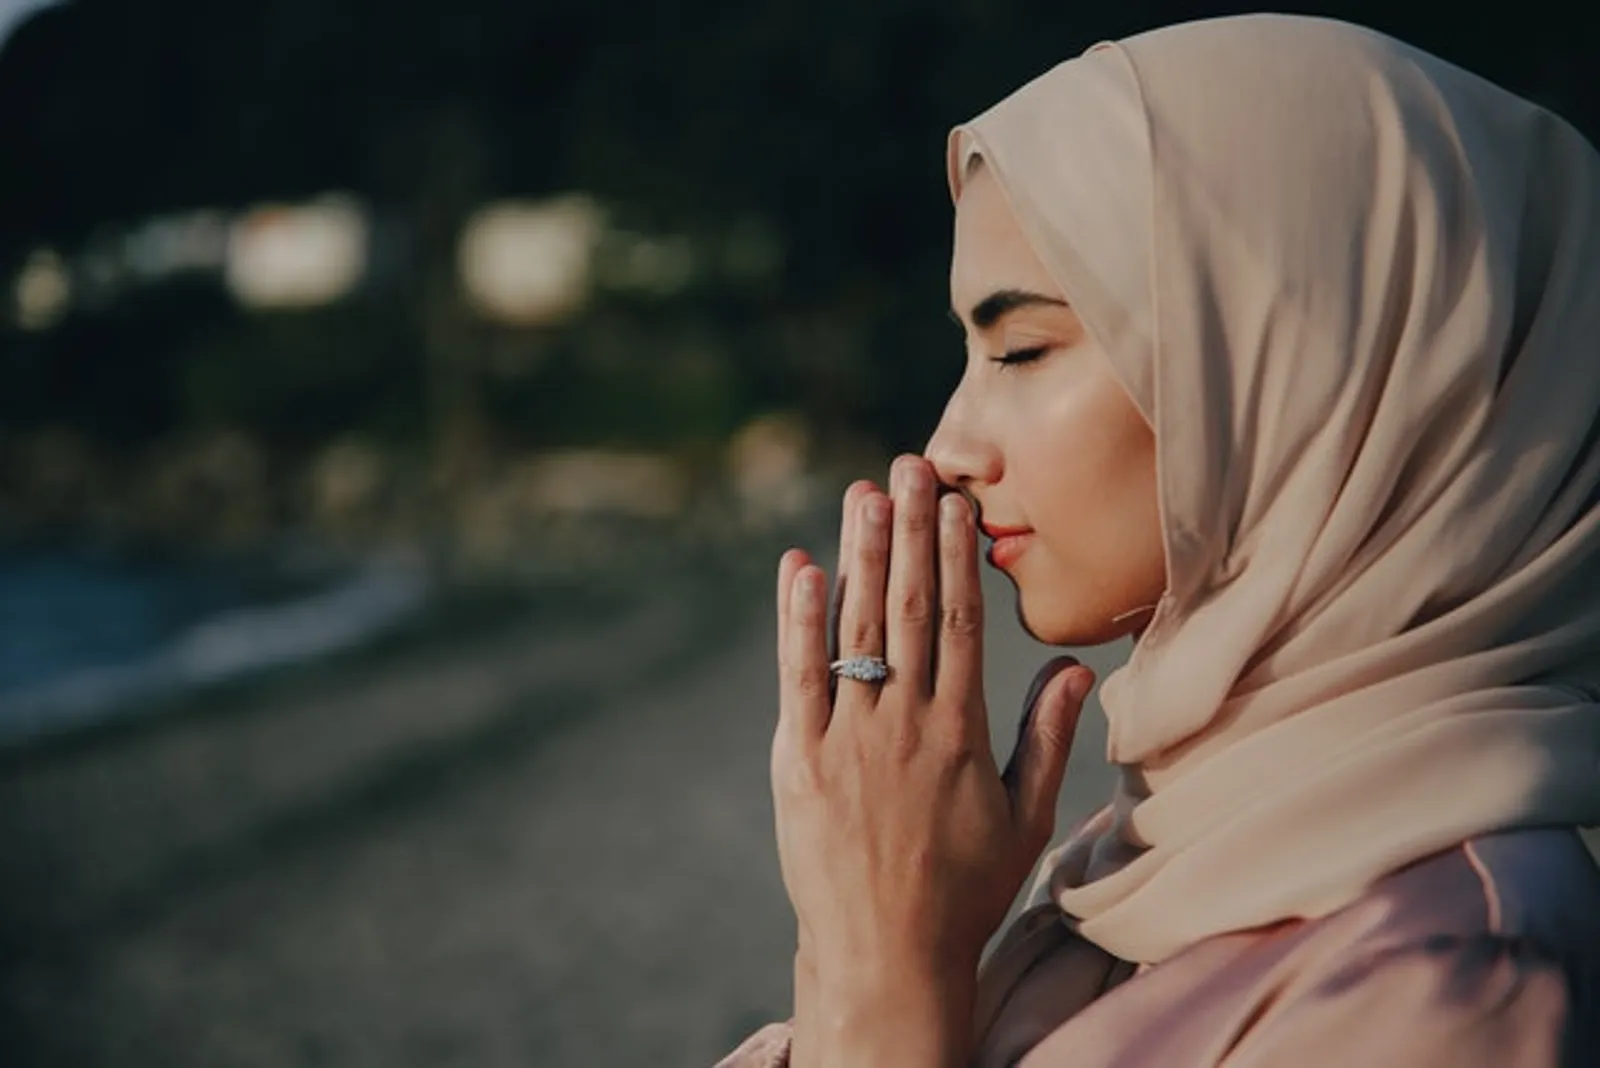 35 Kata-Kata Islami untuk Menyadarkan Seseorang, Penuh Makna